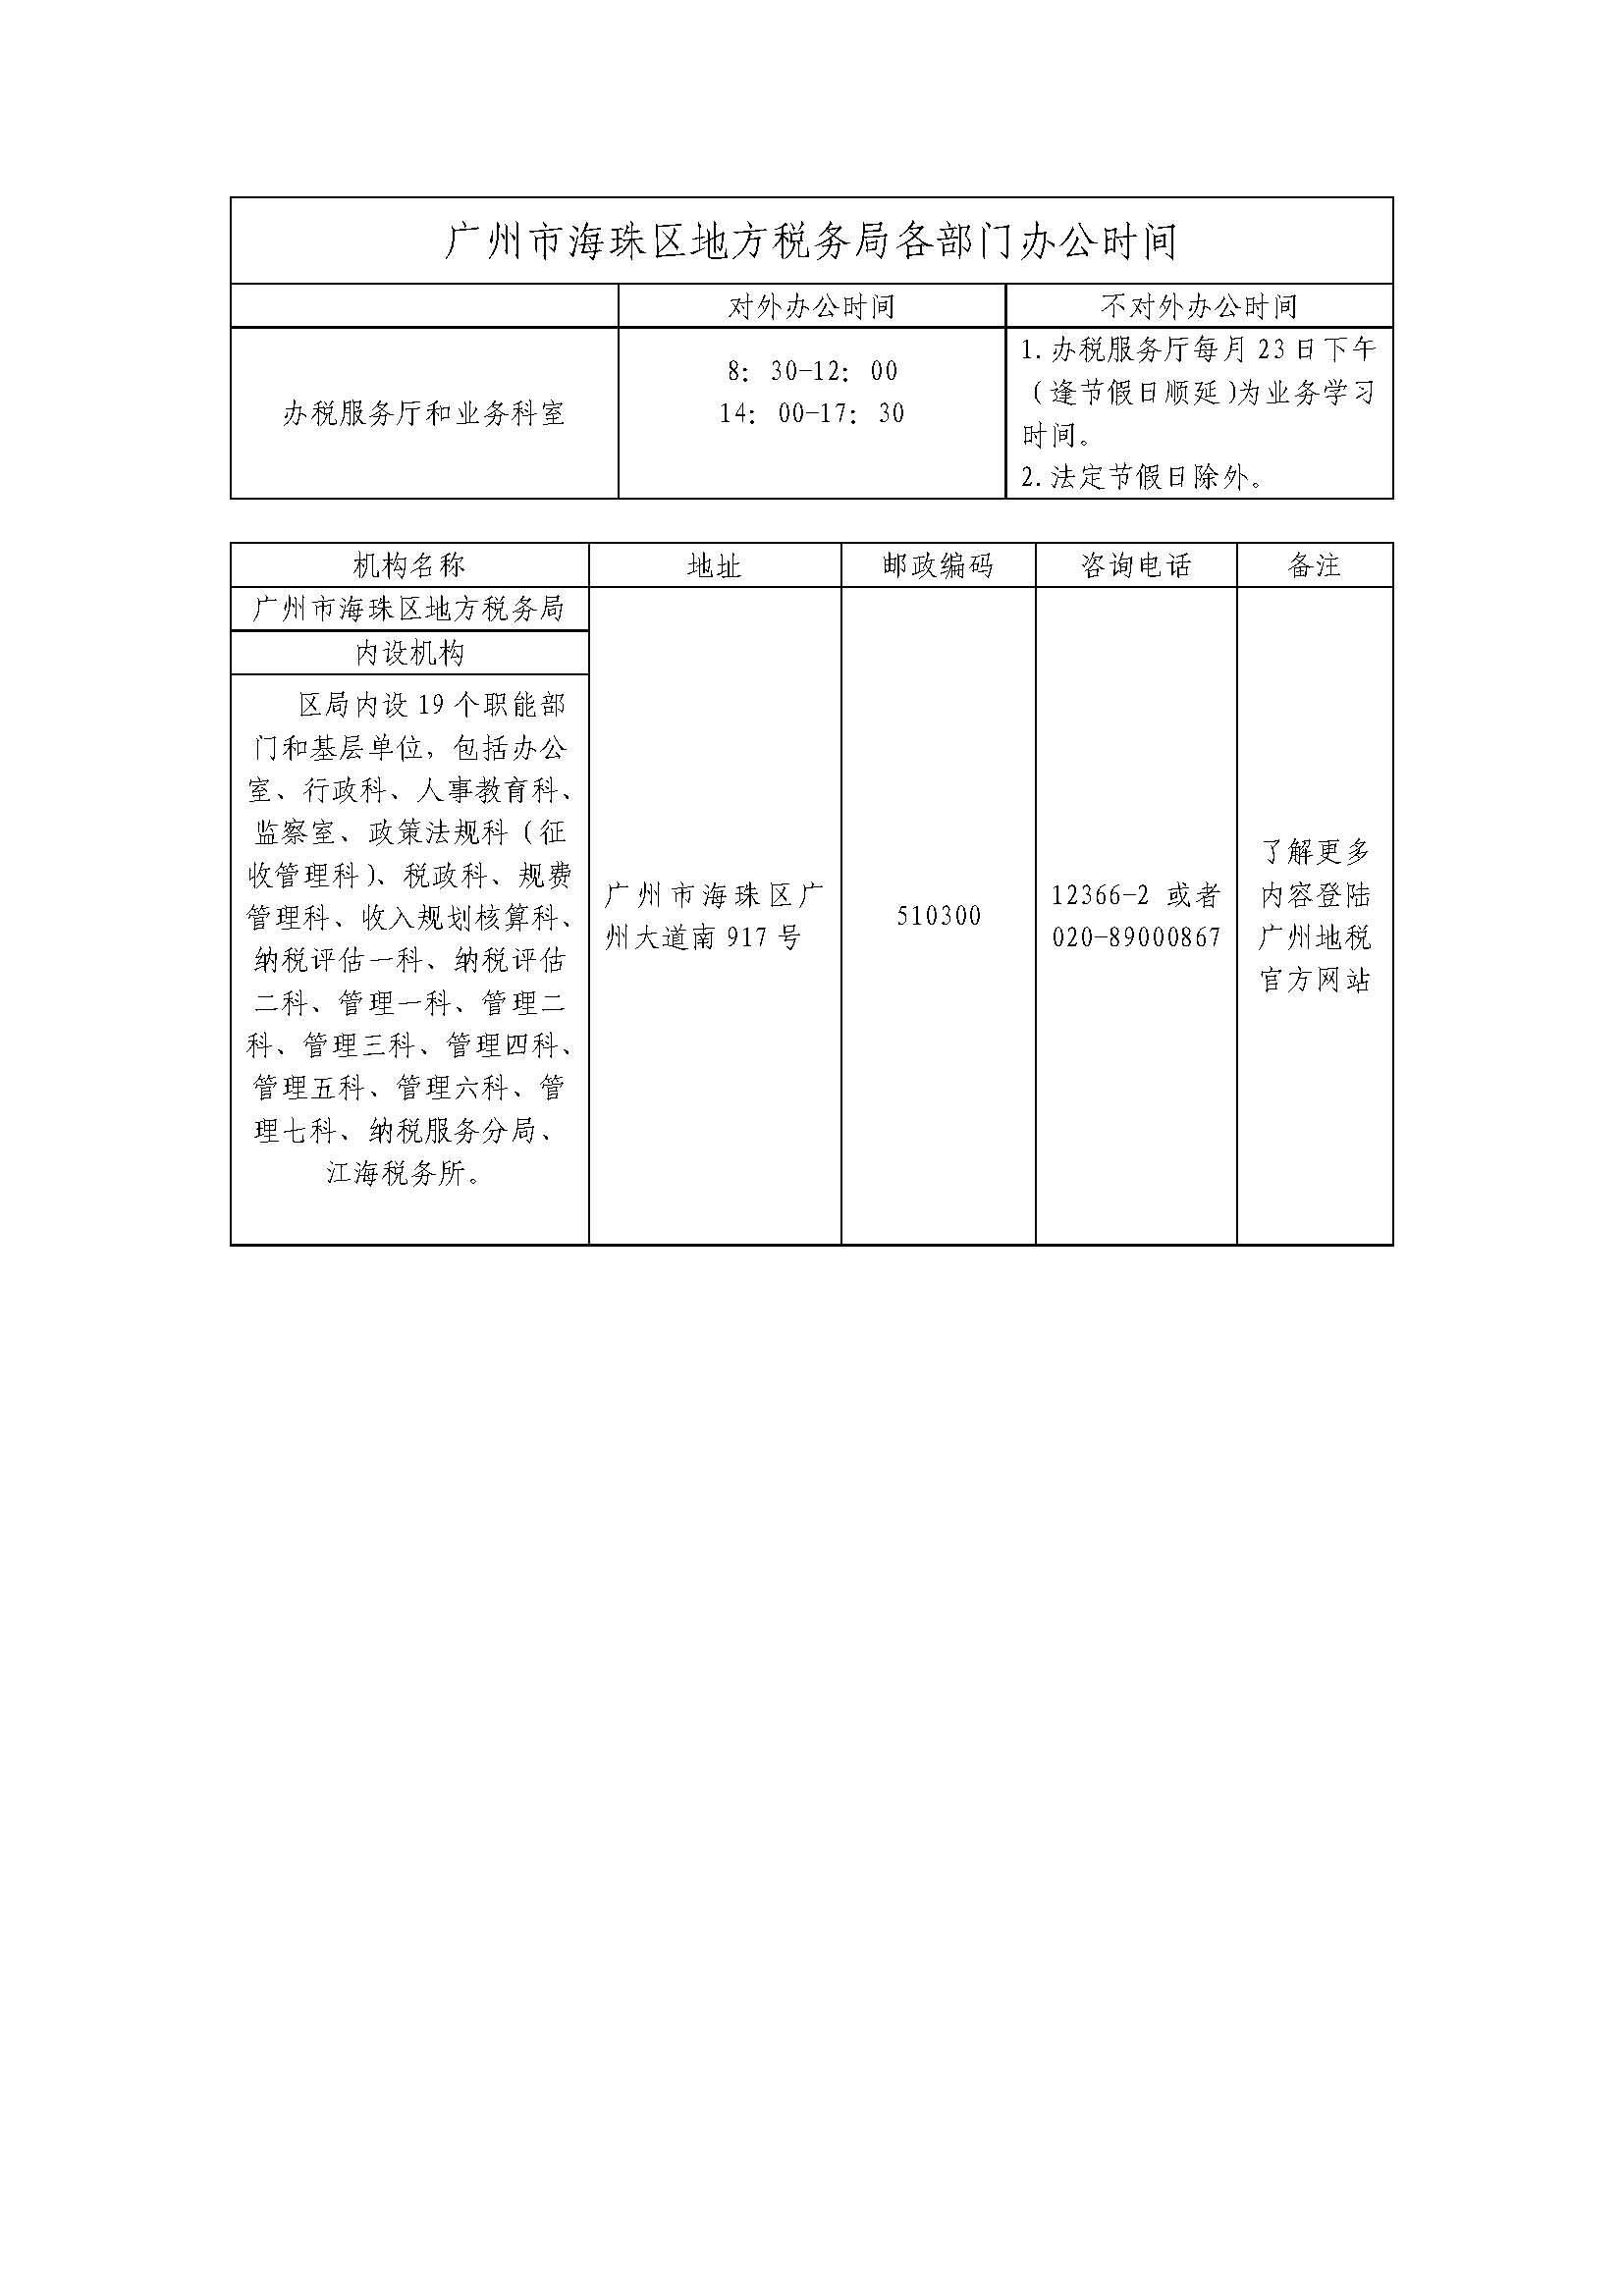 广州市海珠区地方税务局机构设置情况和联系电话5